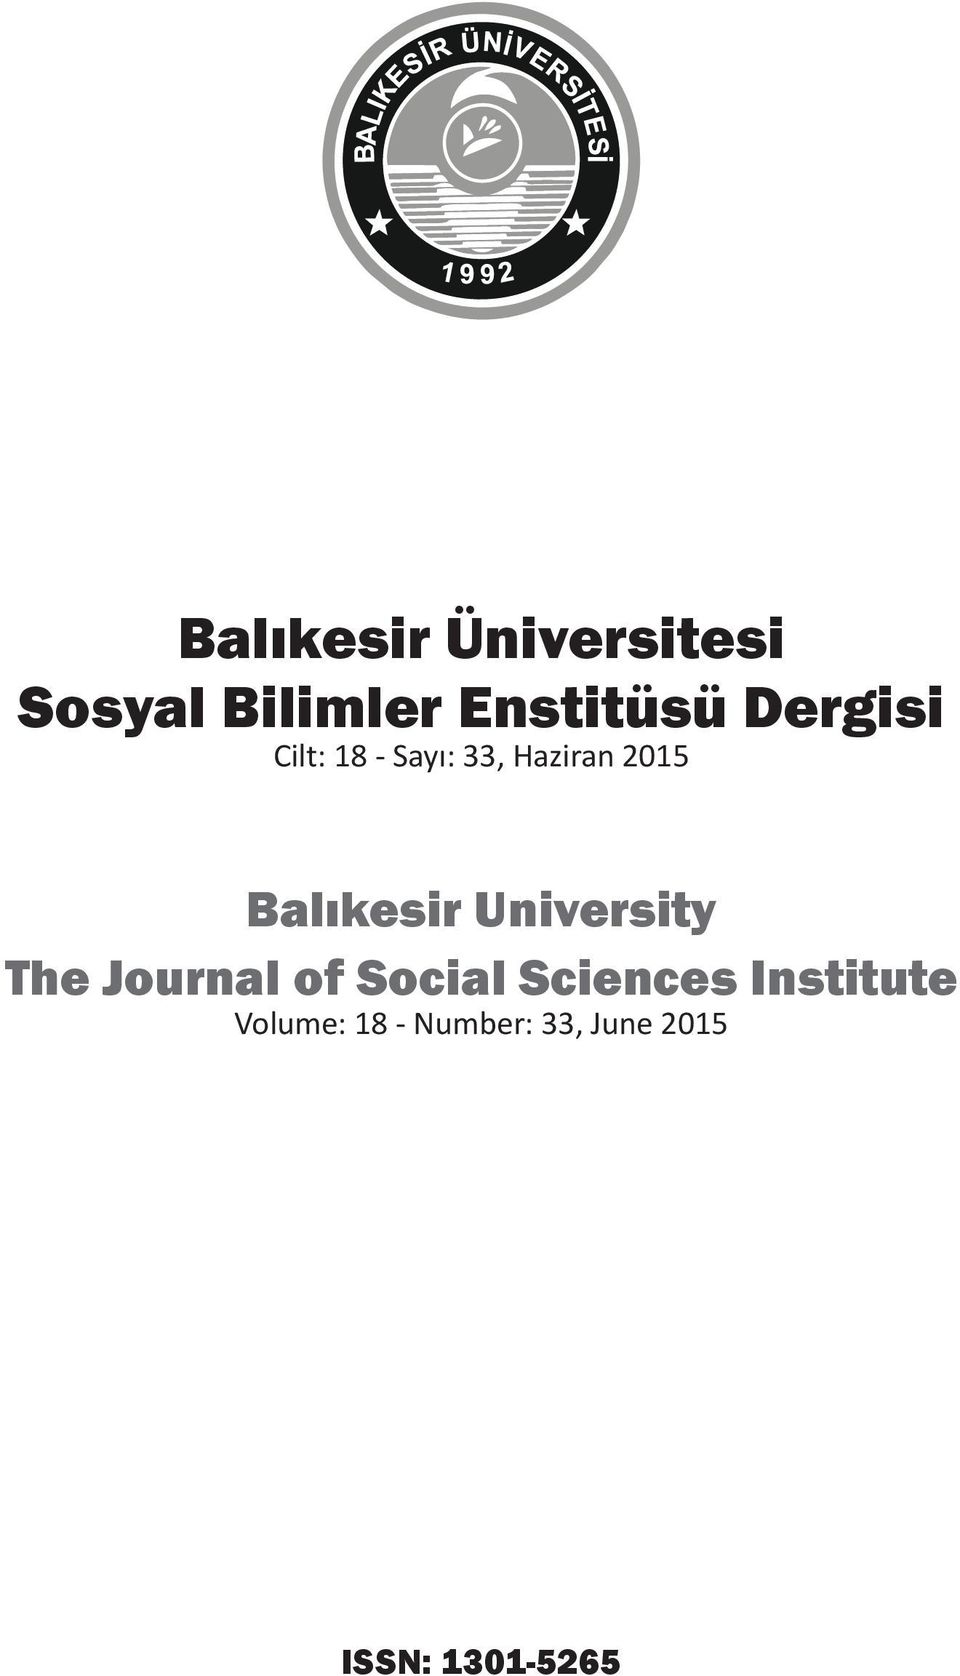 Balıkesir University The Journal of Social